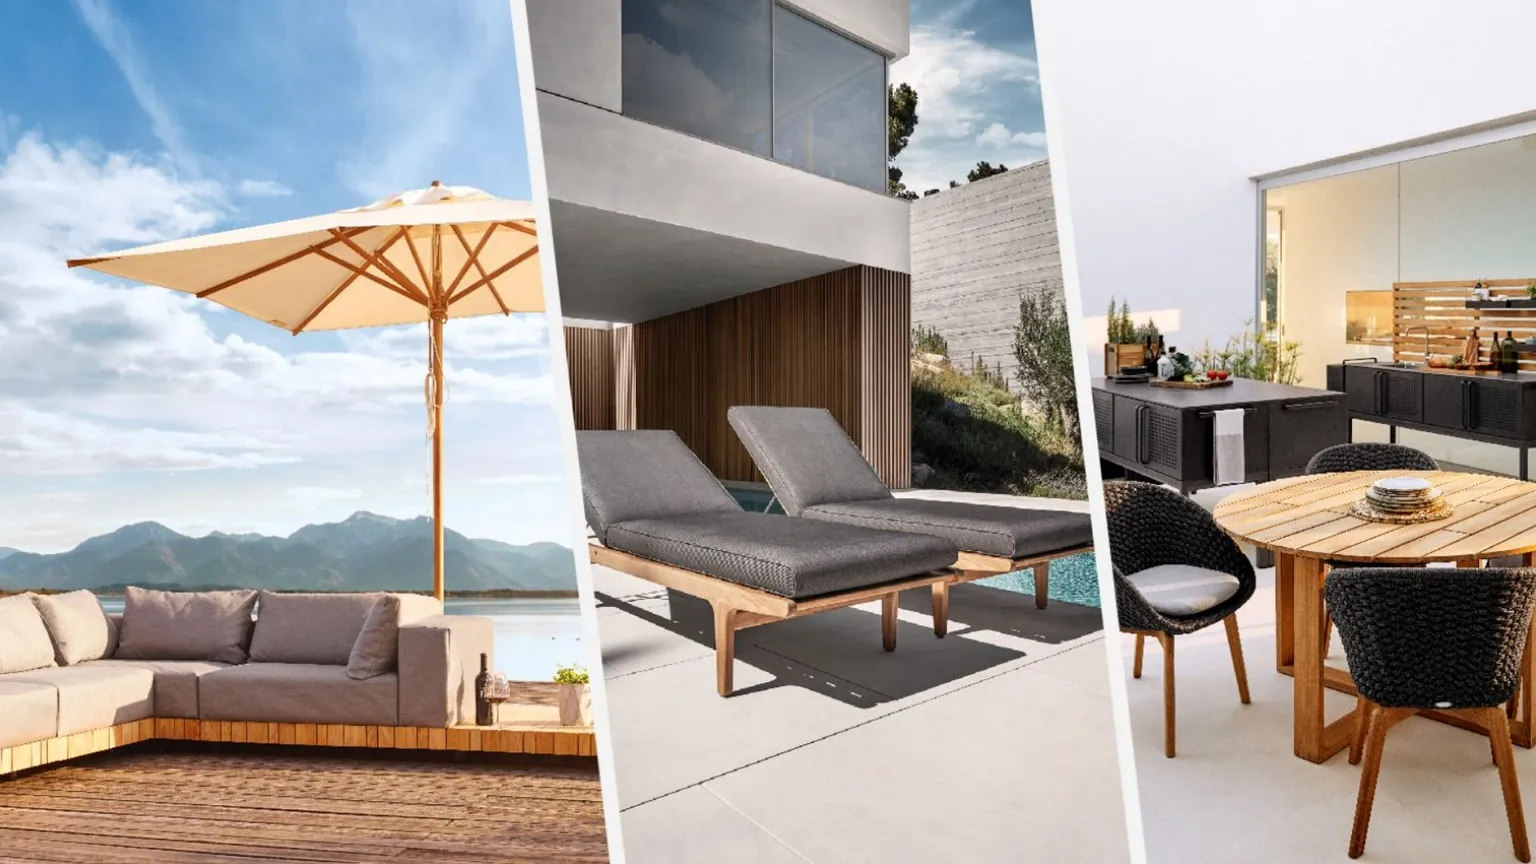 Gartenmöbel in einer Collage: Lounge mit Sonnenschirm, Gartenliegen & Gartentisch 